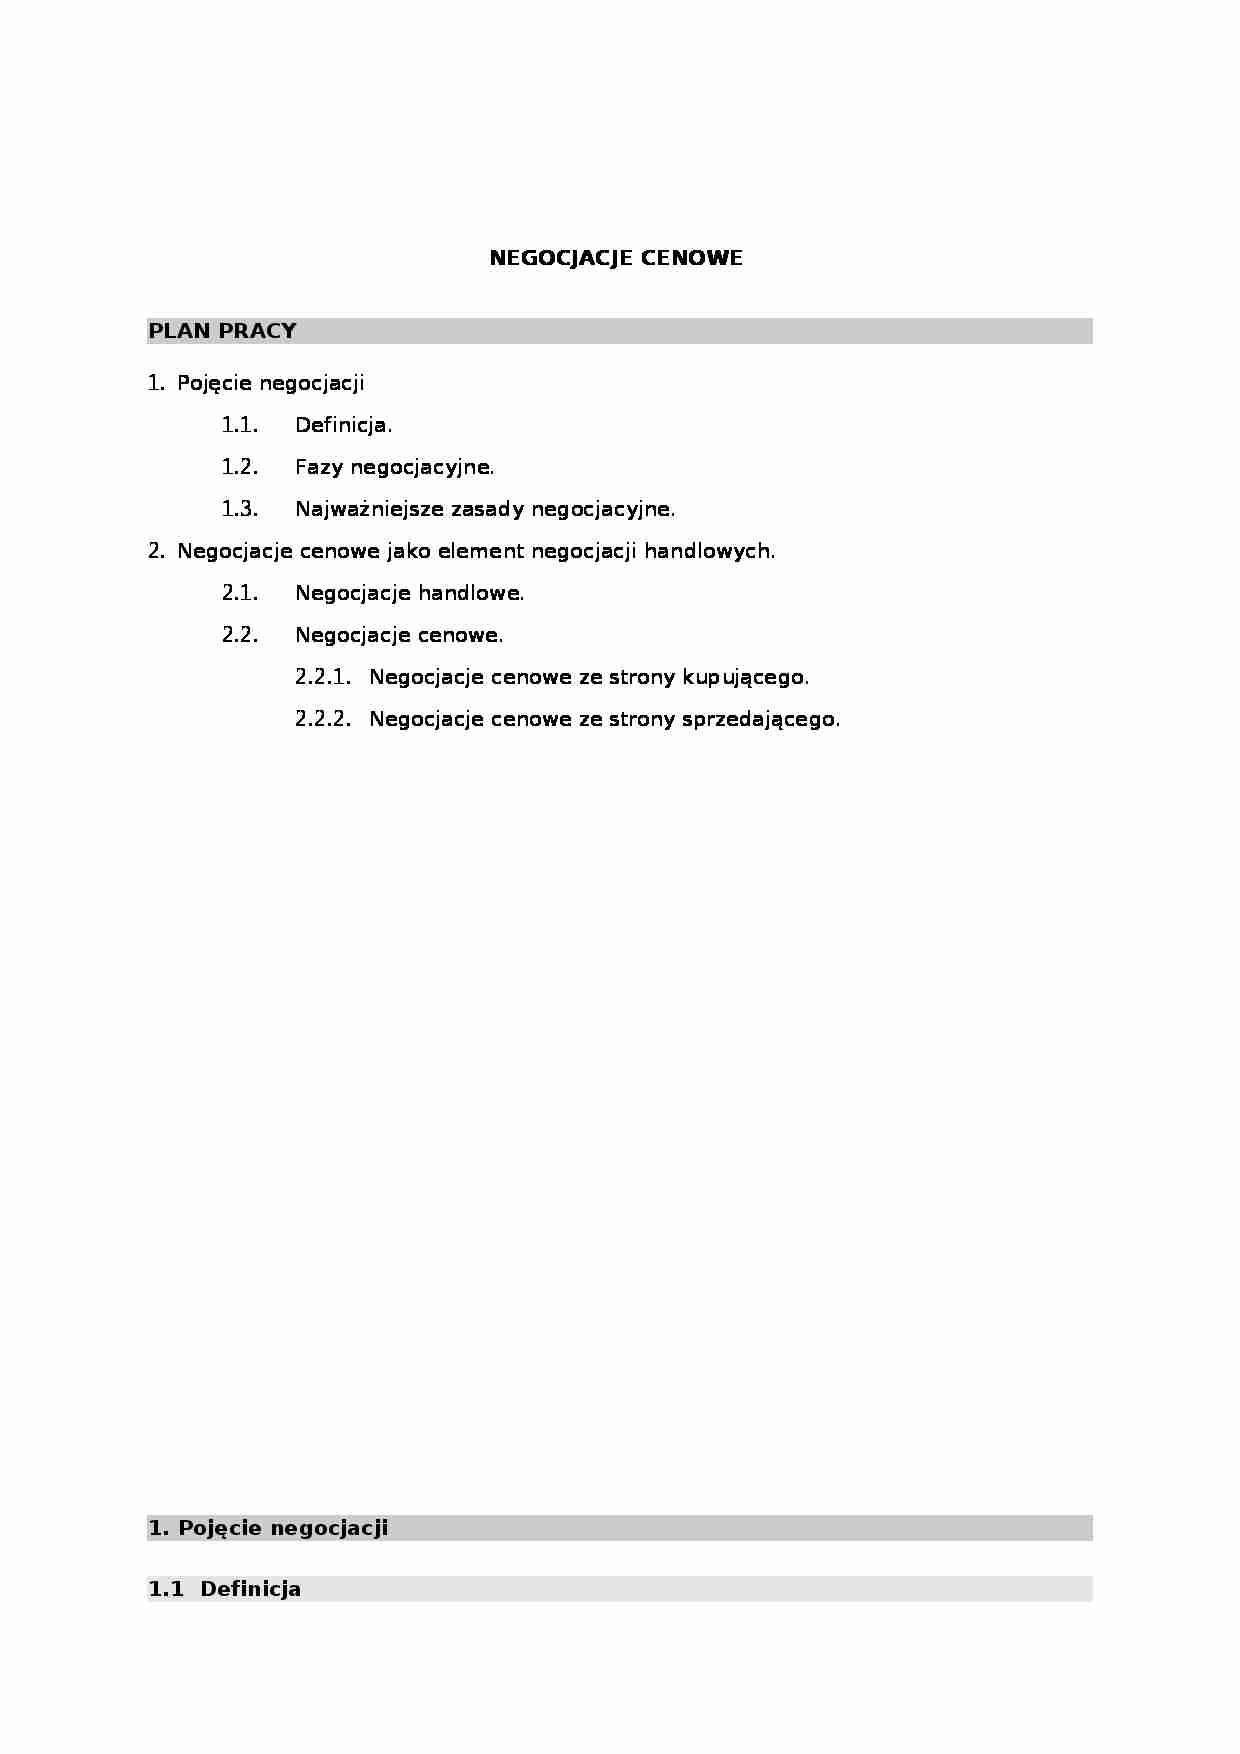 Zarządzanie - negocjacje cenowe - strona 1